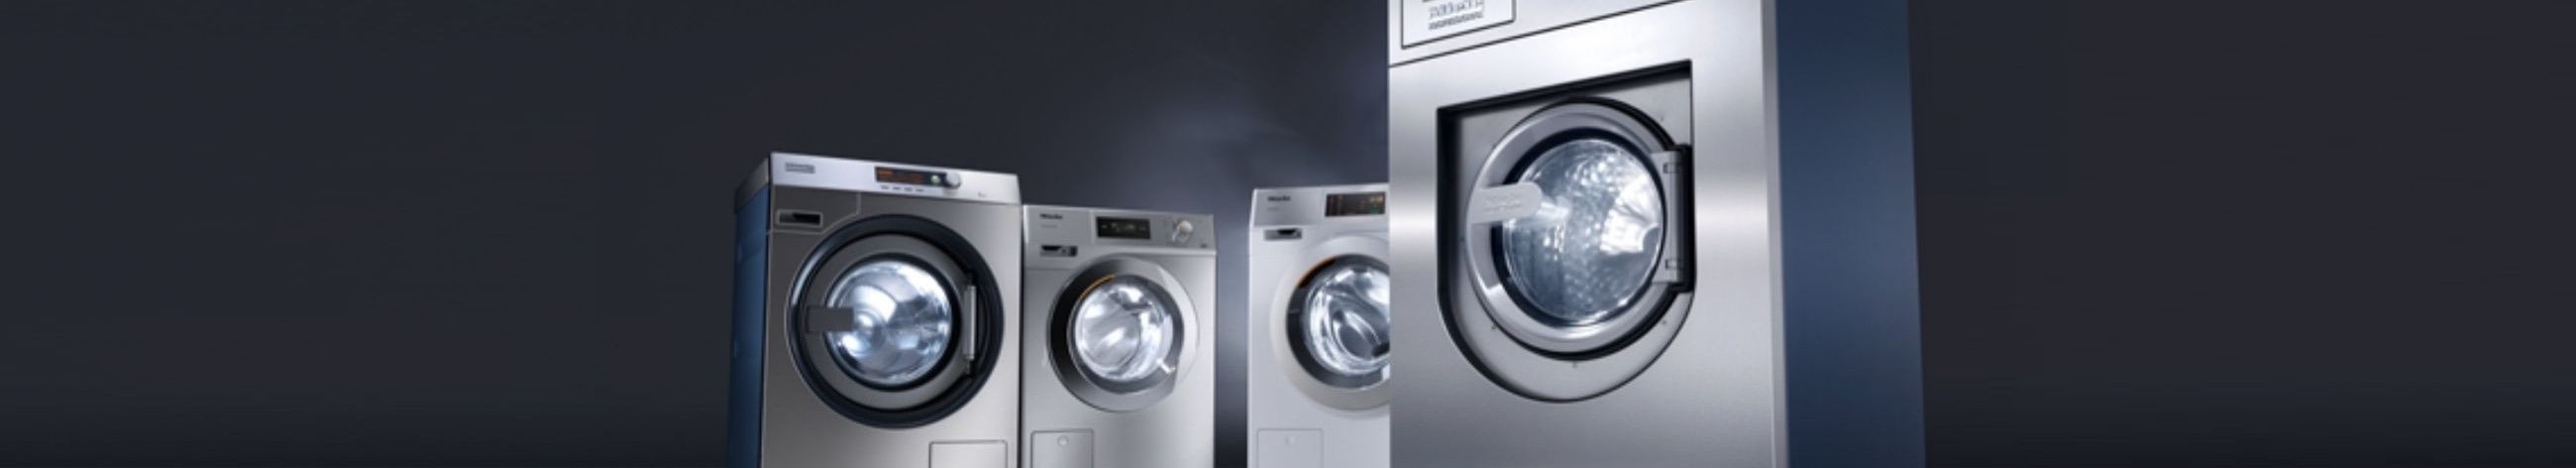 Miele pesumajaseadmed - pesumasinad, kuivatid, triikimiskalandrid. Innovatsiooni liidrid, esindades optimaalset puhtust, ökonoomsust ja vastupidavuist ning pakkudes kasutajasõbralikke lahendusi.